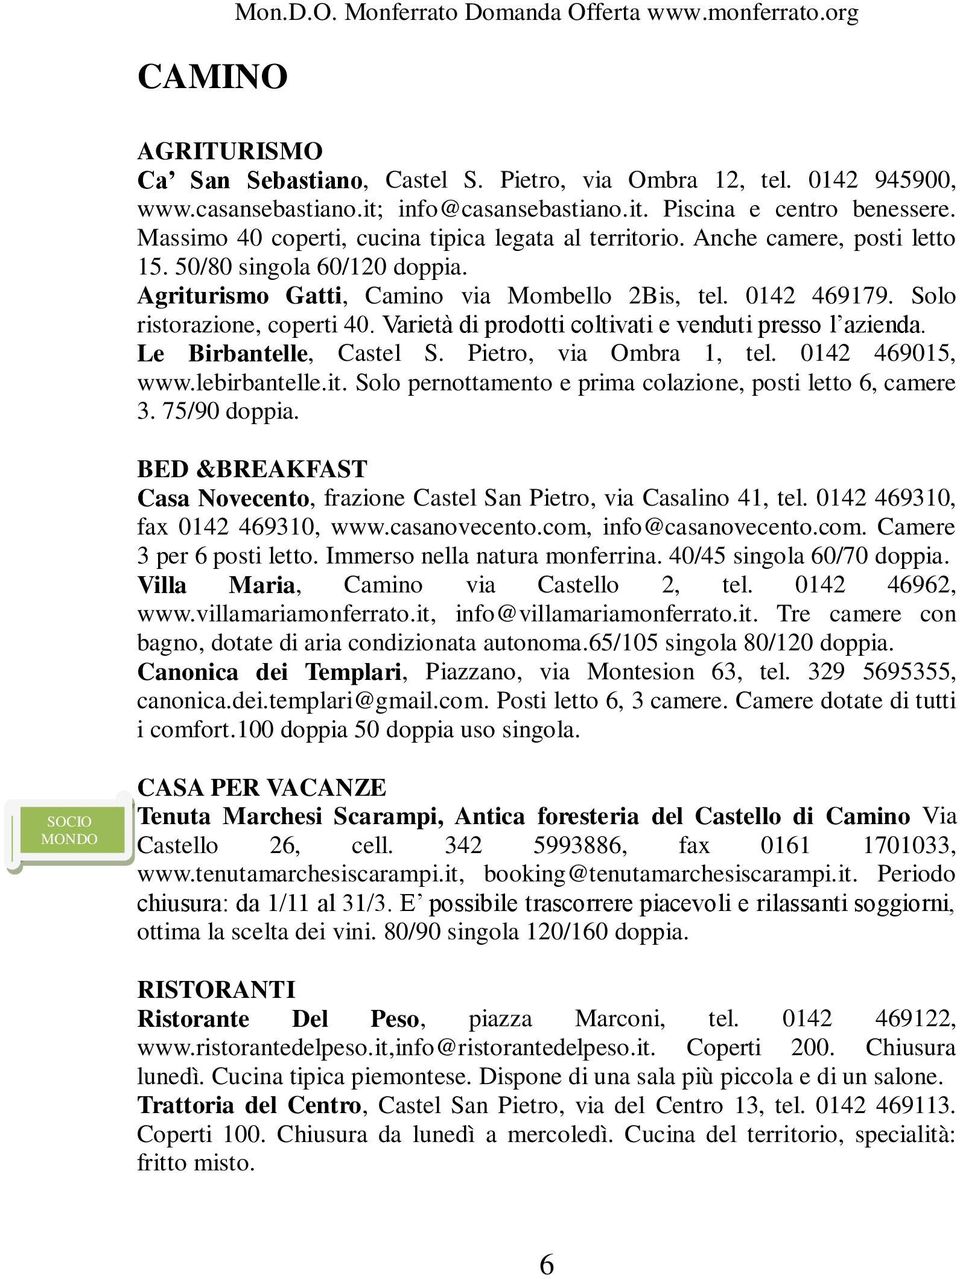 Solo ristorazione, coperti 40. Varietà di prodotti coltivati e venduti presso l azienda. Le Birbantelle, Castel S. Pietro, via Ombra 1, tel. 0142 469015, www.lebirbantelle.it.